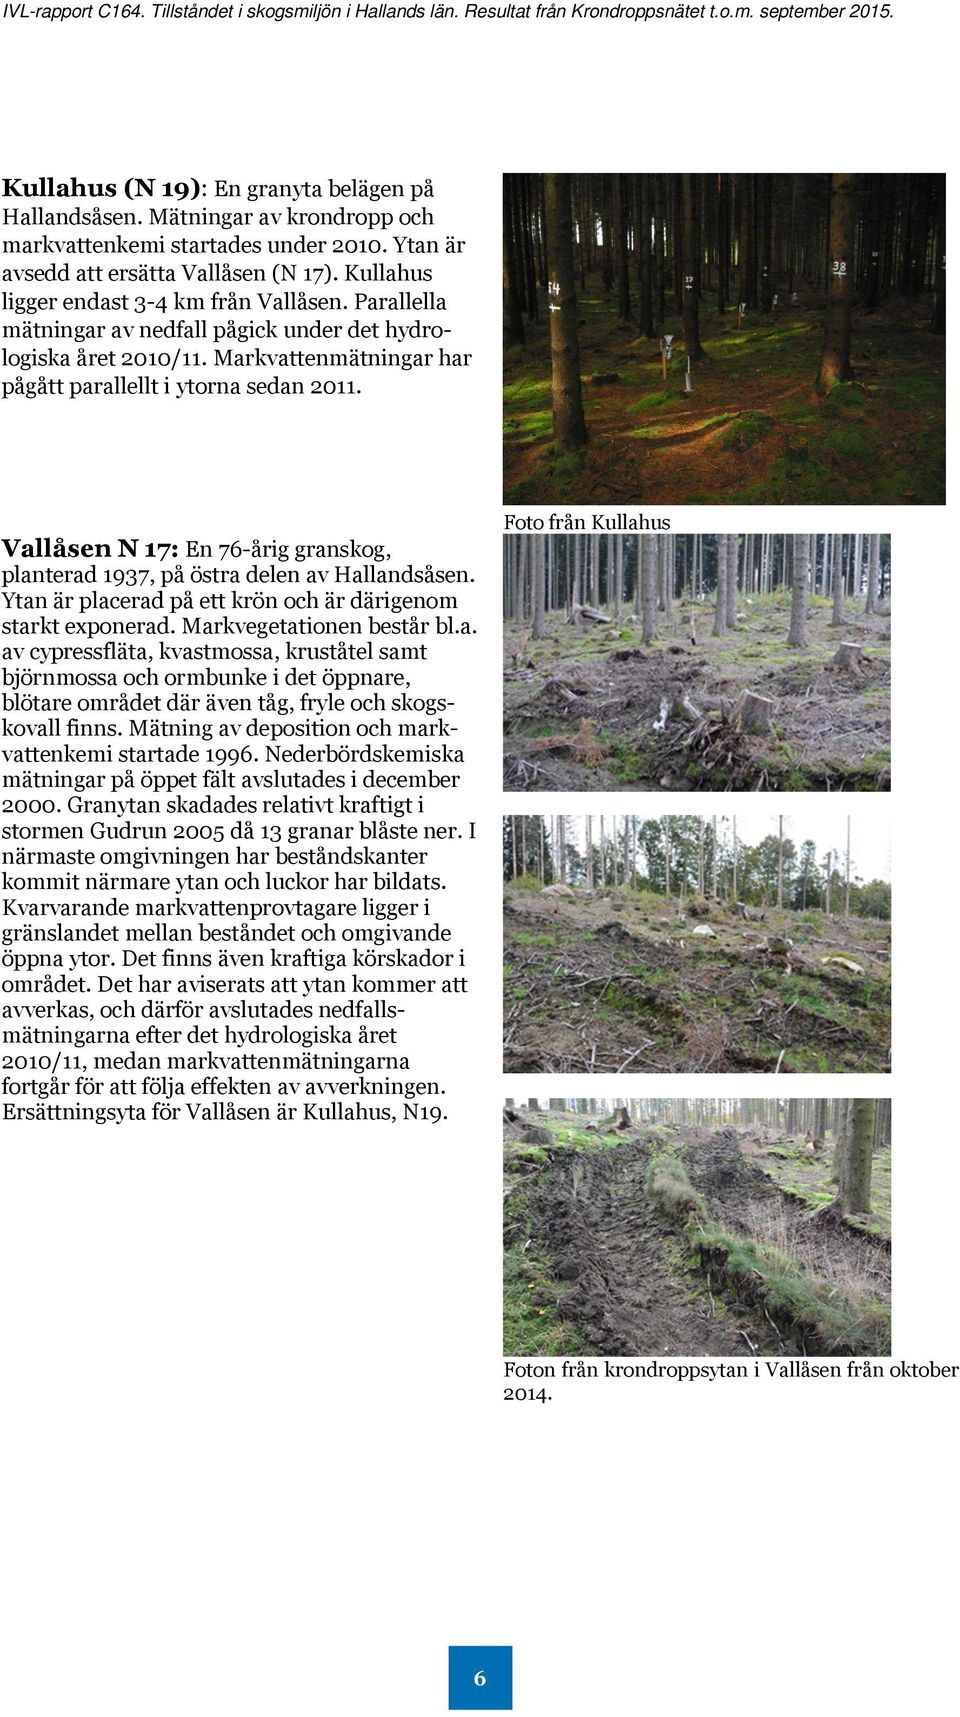 Vallåsen N 17: En 76-årig granskog, planterad 1937, på östra delen av Hallandsåsen. Ytan är placerad på ett krön och är därigenom starkt exponerad. Markvegetationen består bl.a. av cypressfläta, kvastmossa, kruståtel samt björnmossa och ormbunke i det öppnare, blötare området där även tåg, fryle och skogskovall finns.